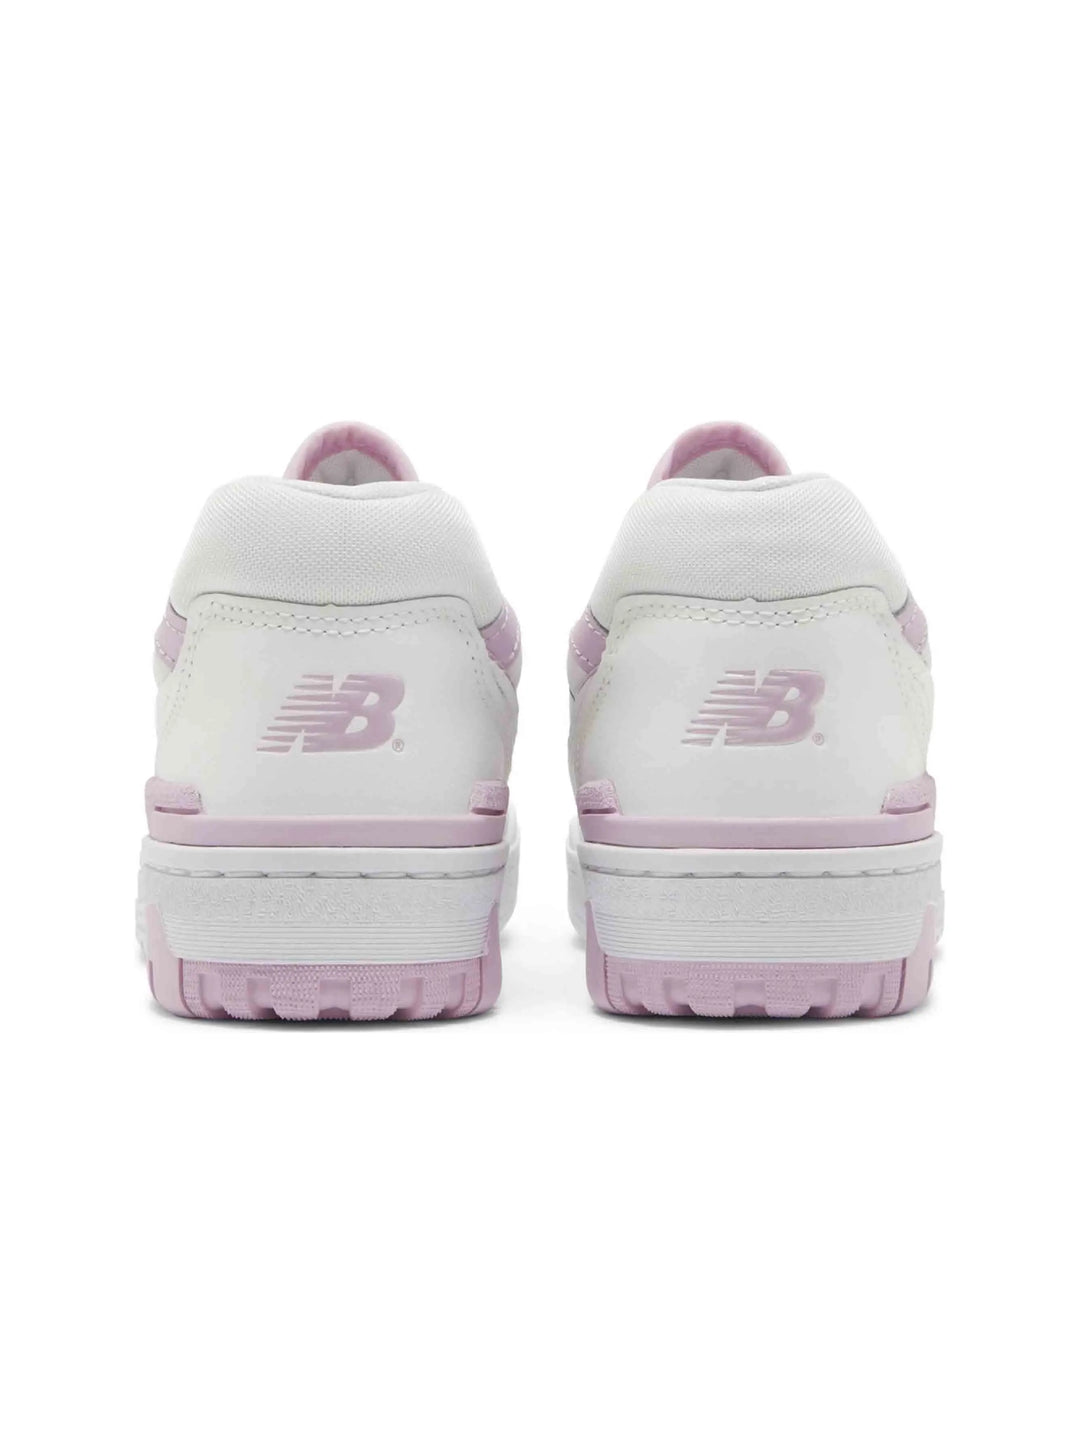 New Balance 550 White Bubblegum Pink (W) Prior